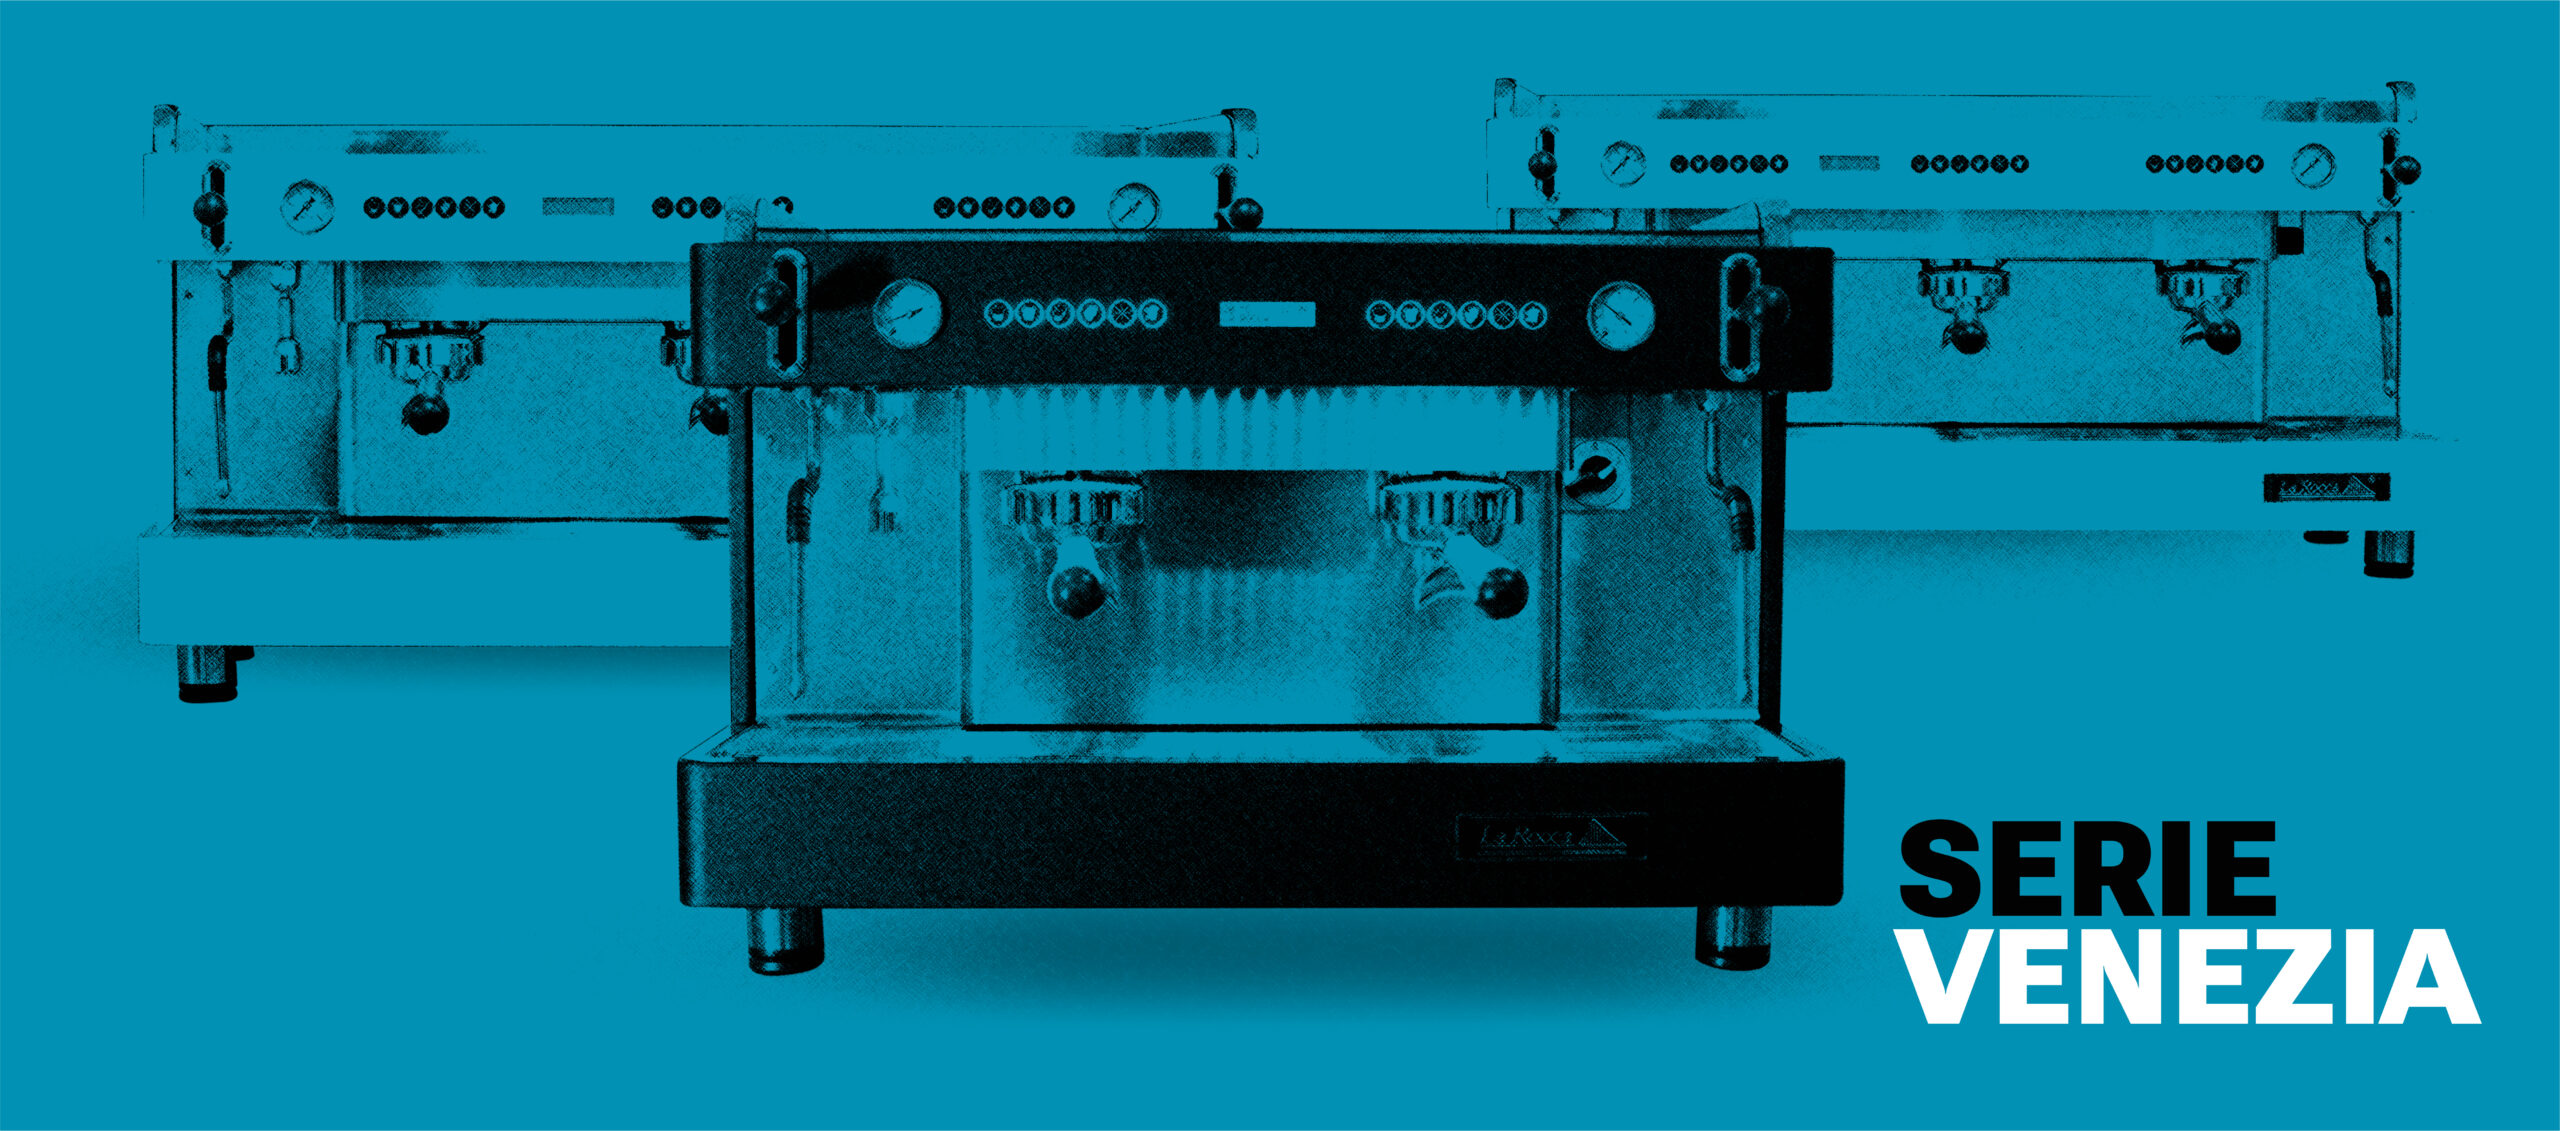 Banner en color azul 3 máquinas de café de la serie Venezia de La Rocca Chile